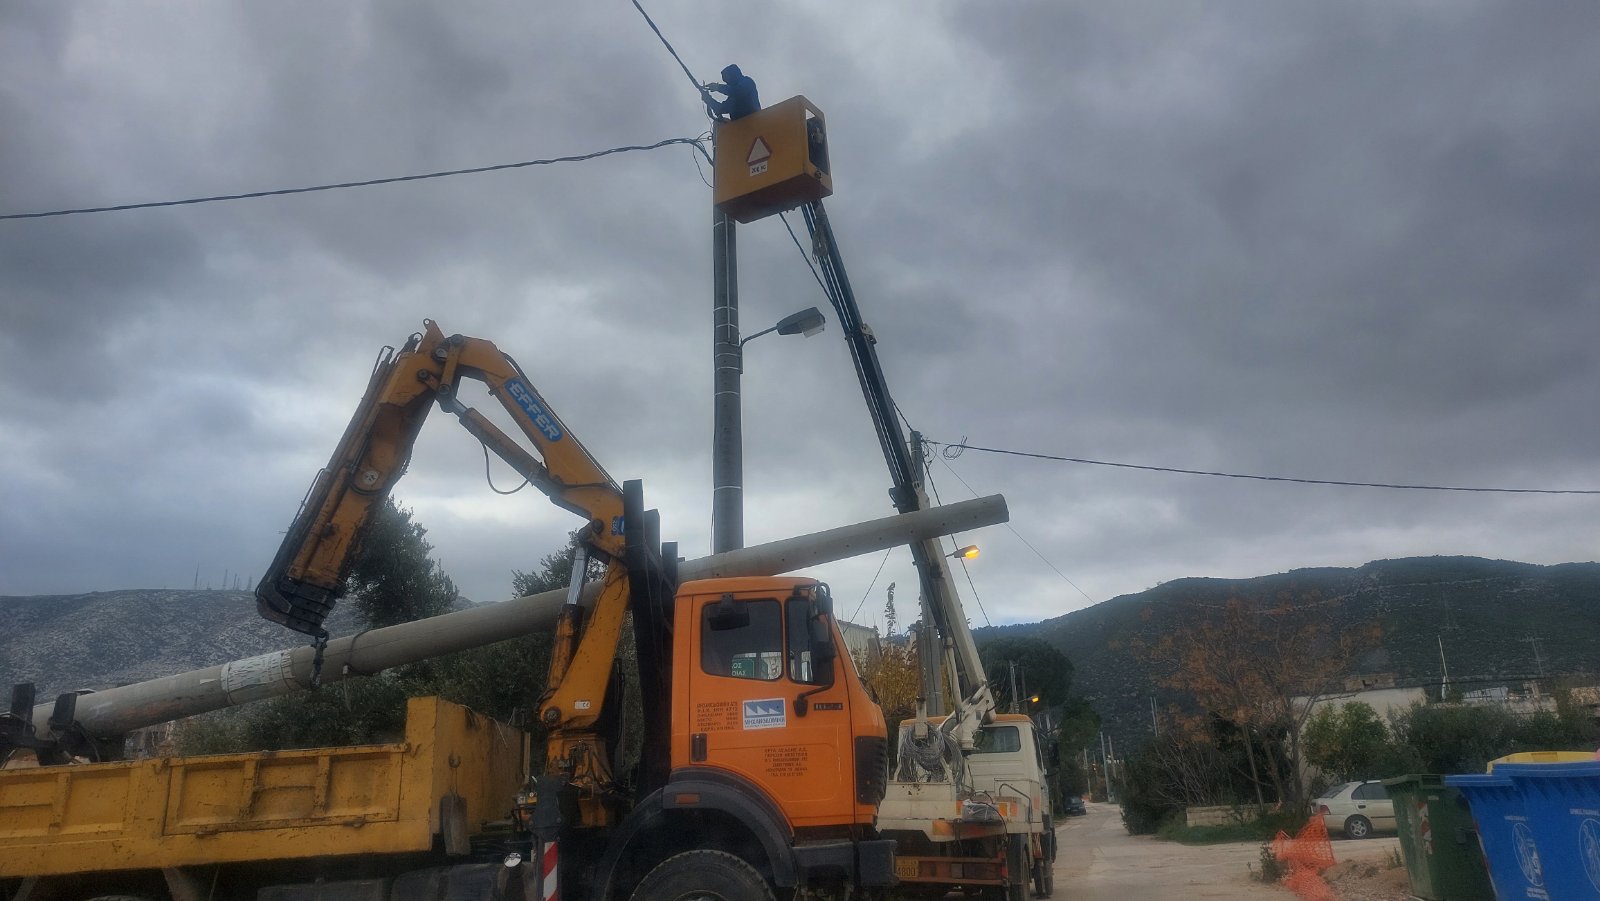 Δήμος Παιανίας: Απομακρύνθηκαν επικίνδυνες κολώνες ηλεκτροδότησης – Άνοιξε ο δρόμος για την ολοκλήρωση έργων